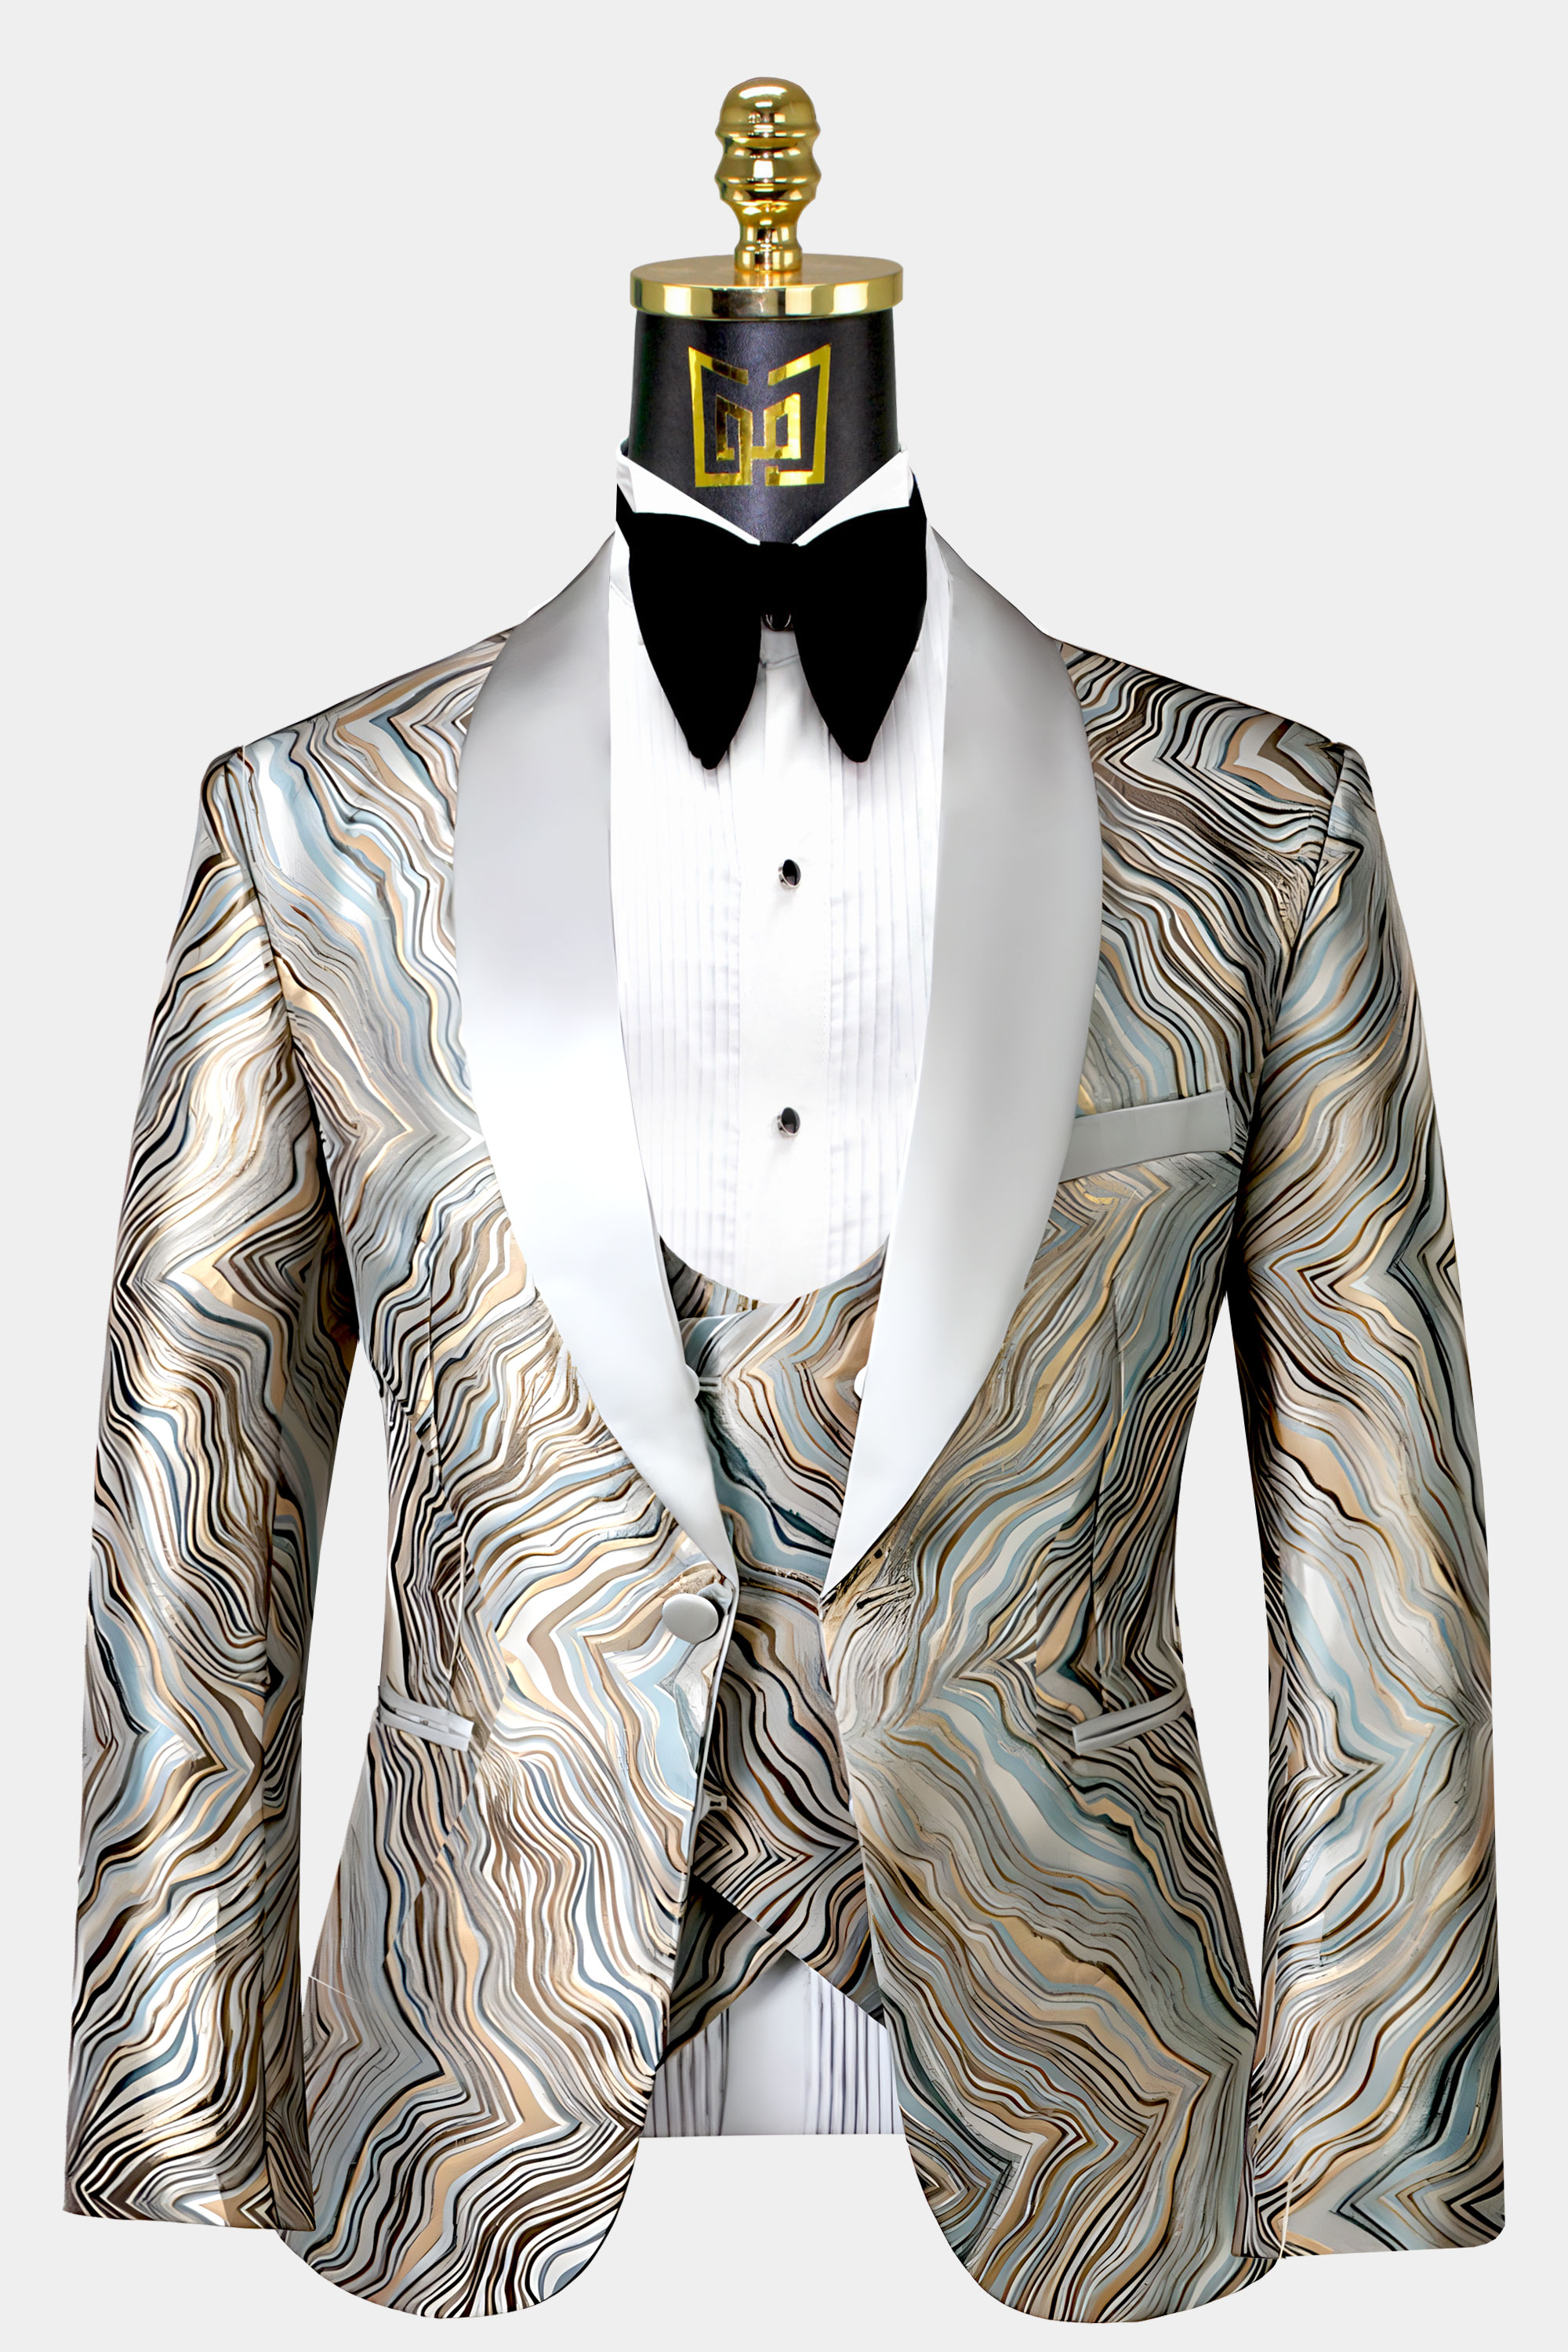 Champagne-Gold-Tuxedo-Wedding-Groom-Suit-from-Gentlemansguru.com